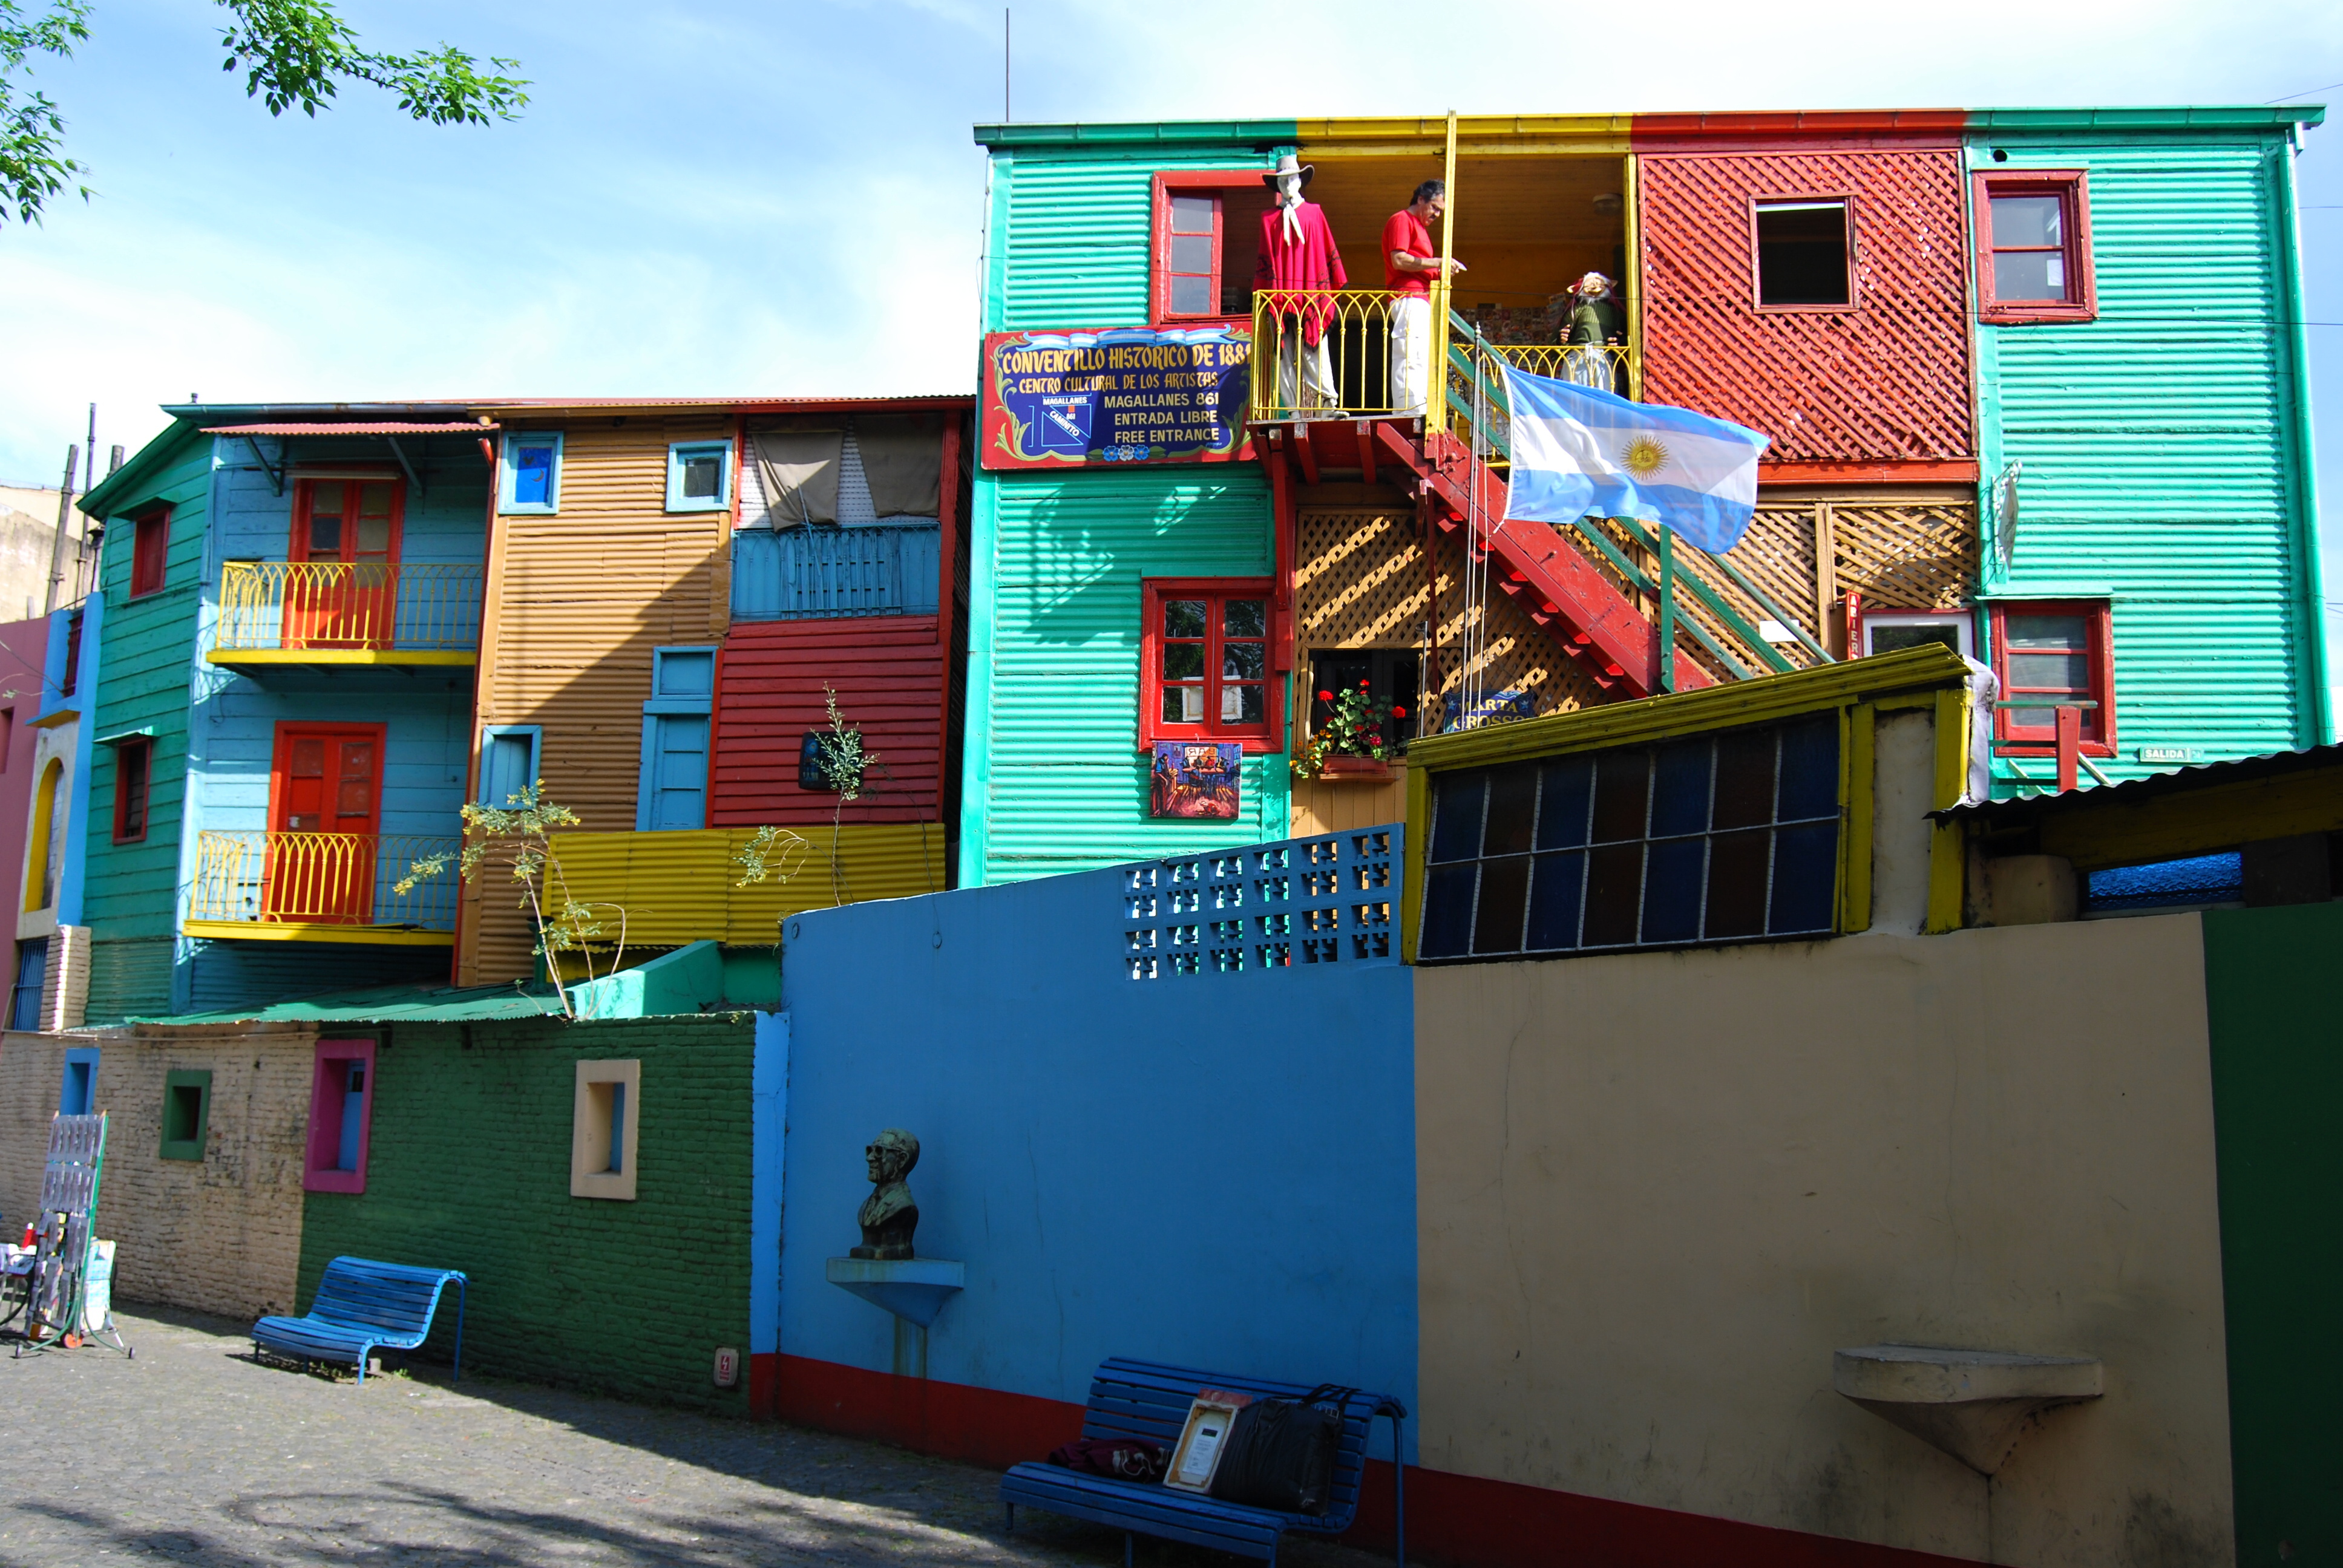 Le case colorate del quartiere La Boca